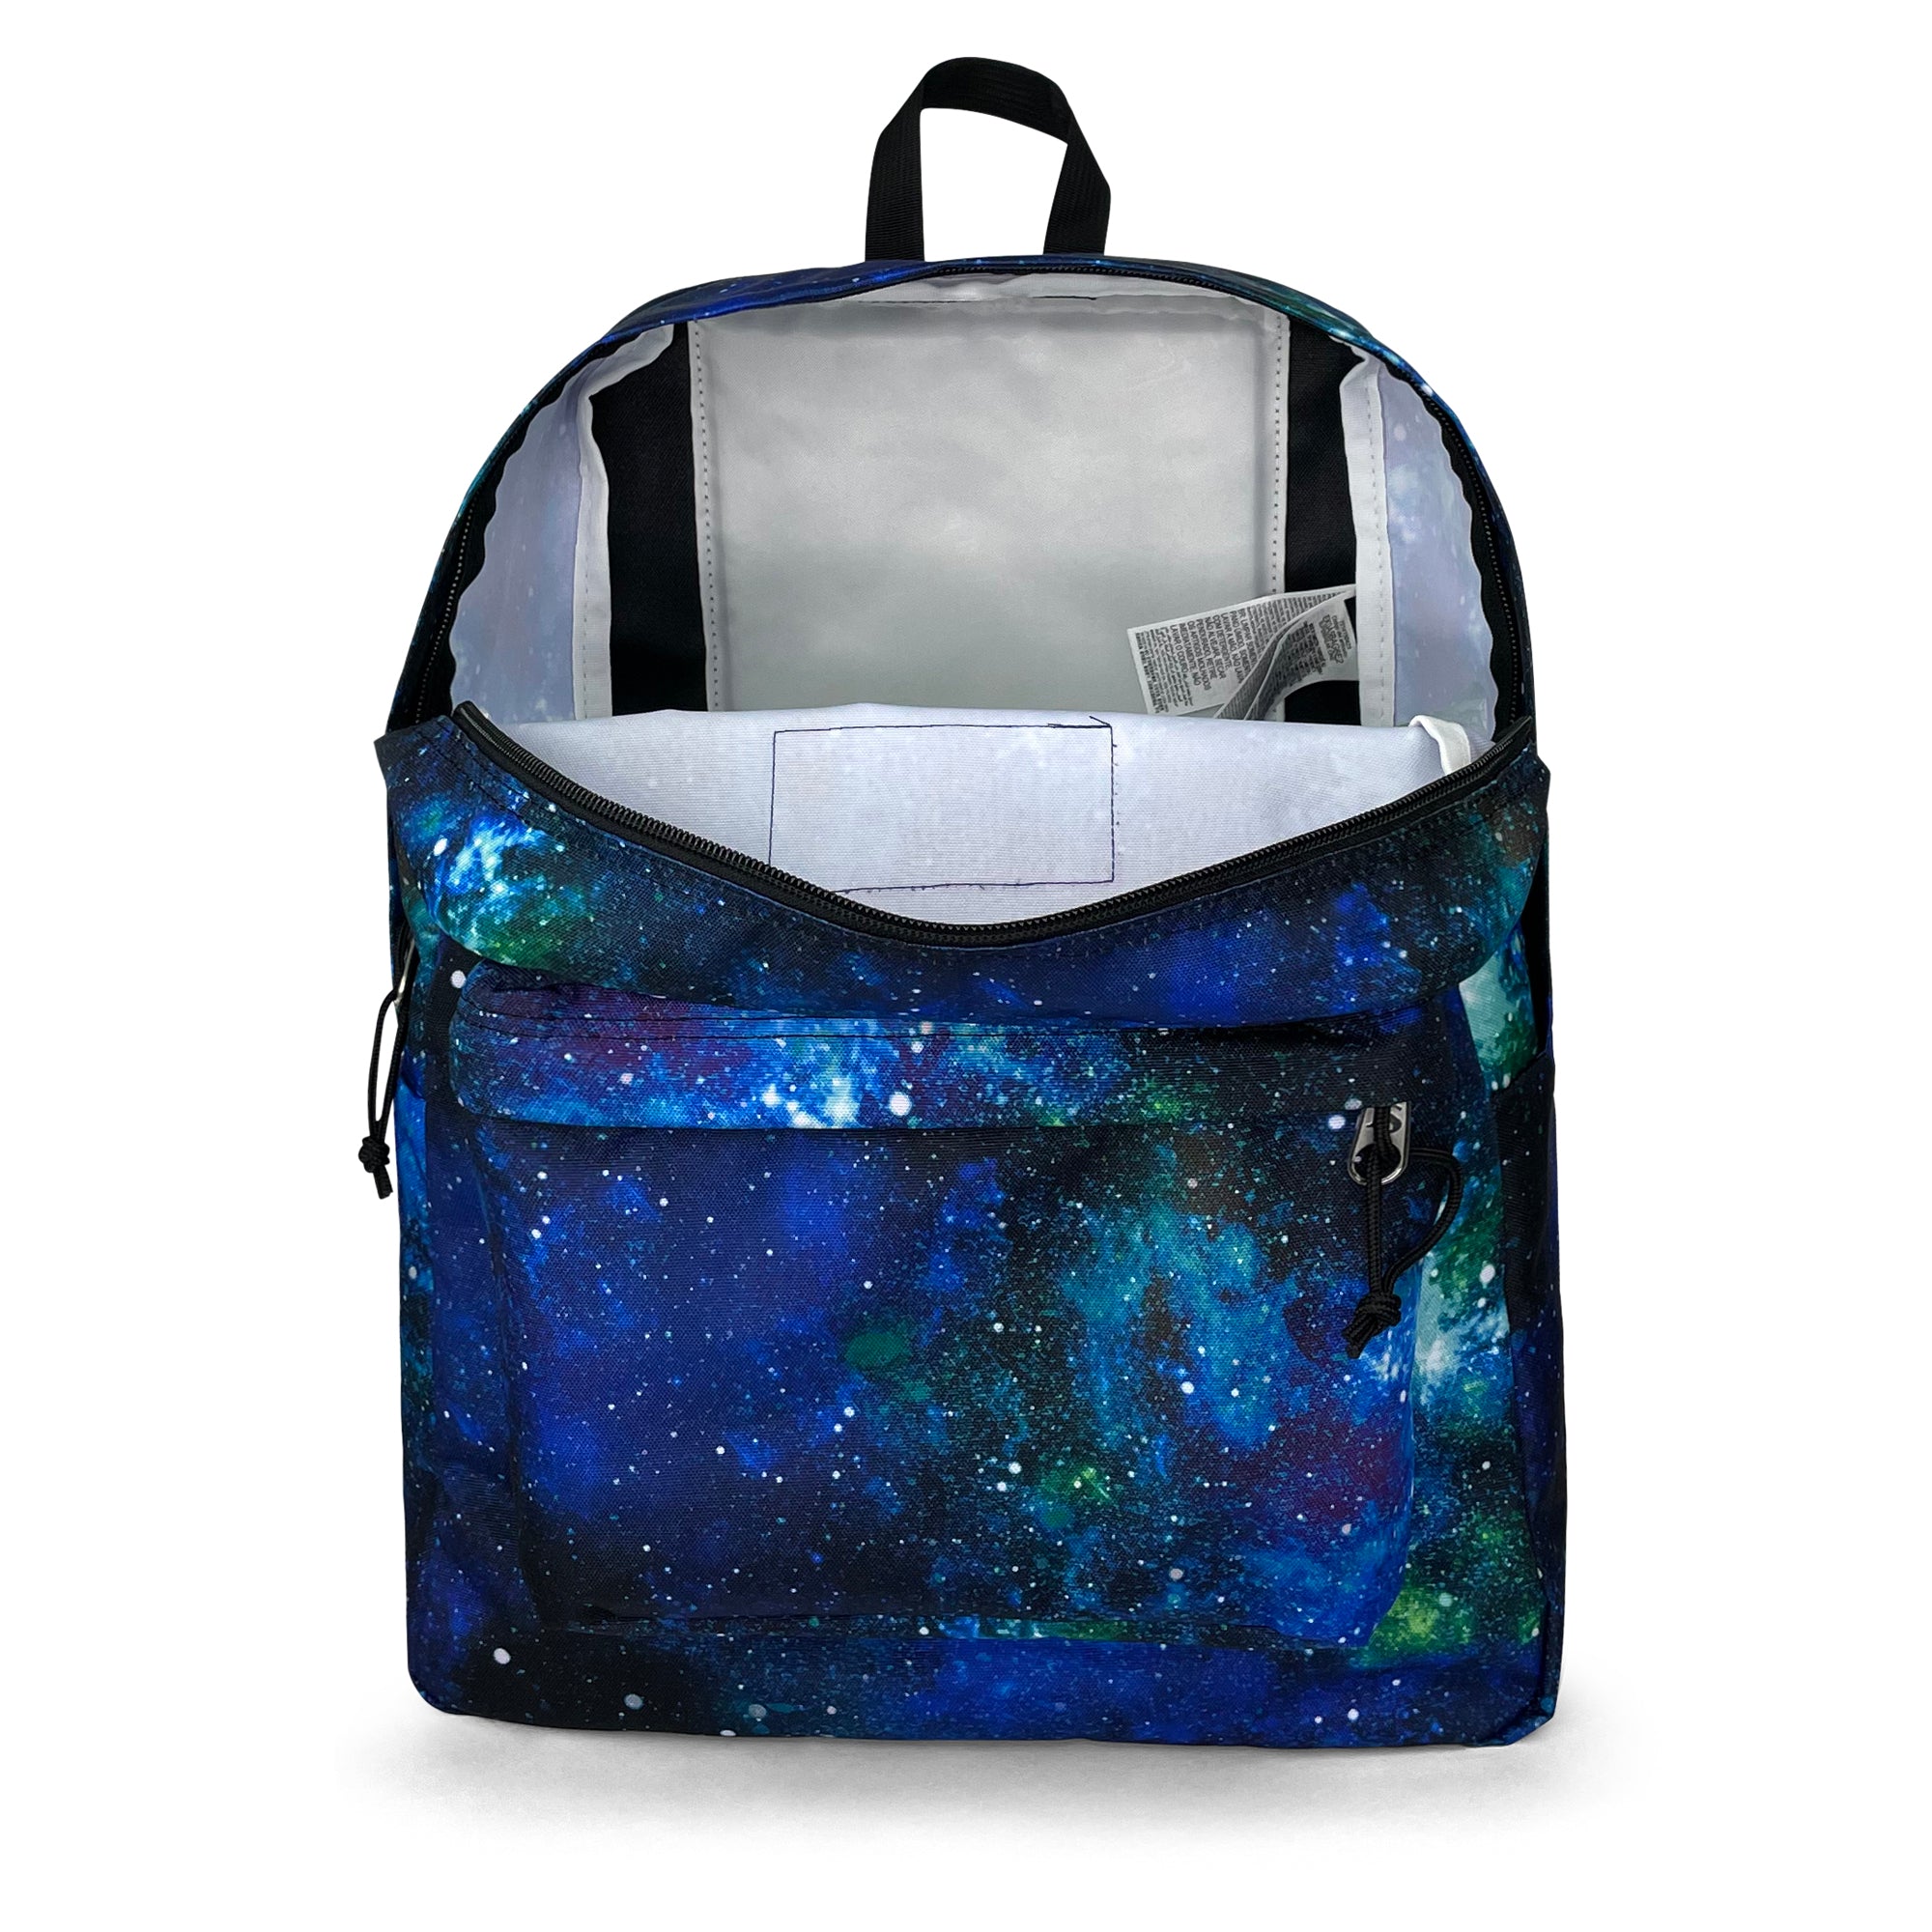 Superbreak One Backpack-Backpack-Jansport-Cyberspace Galaxy-SchoolBagsAndStuff